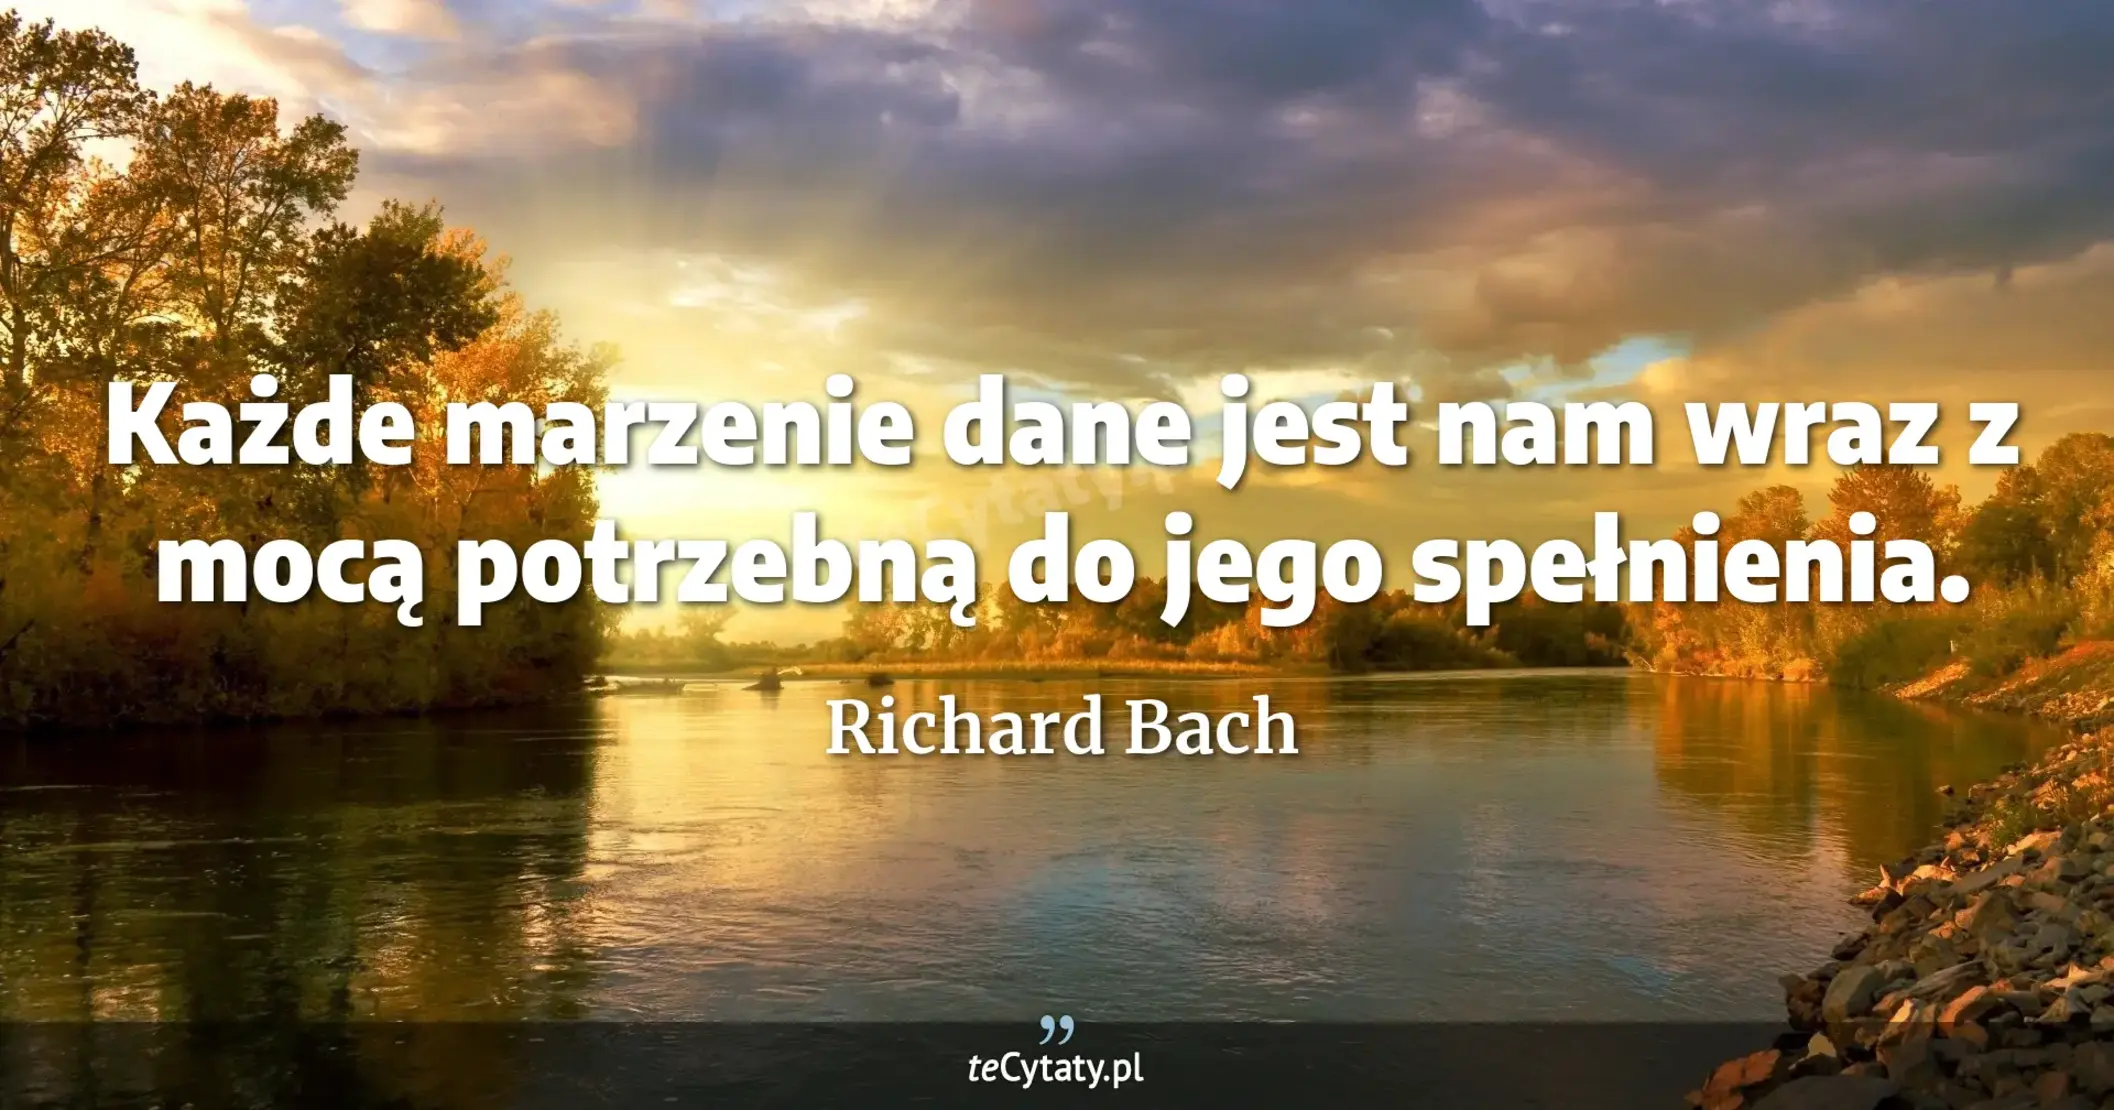 Każde marzenie dane jest nam wraz z mocą potrzebną do jego spełnienia. - Richard Bach